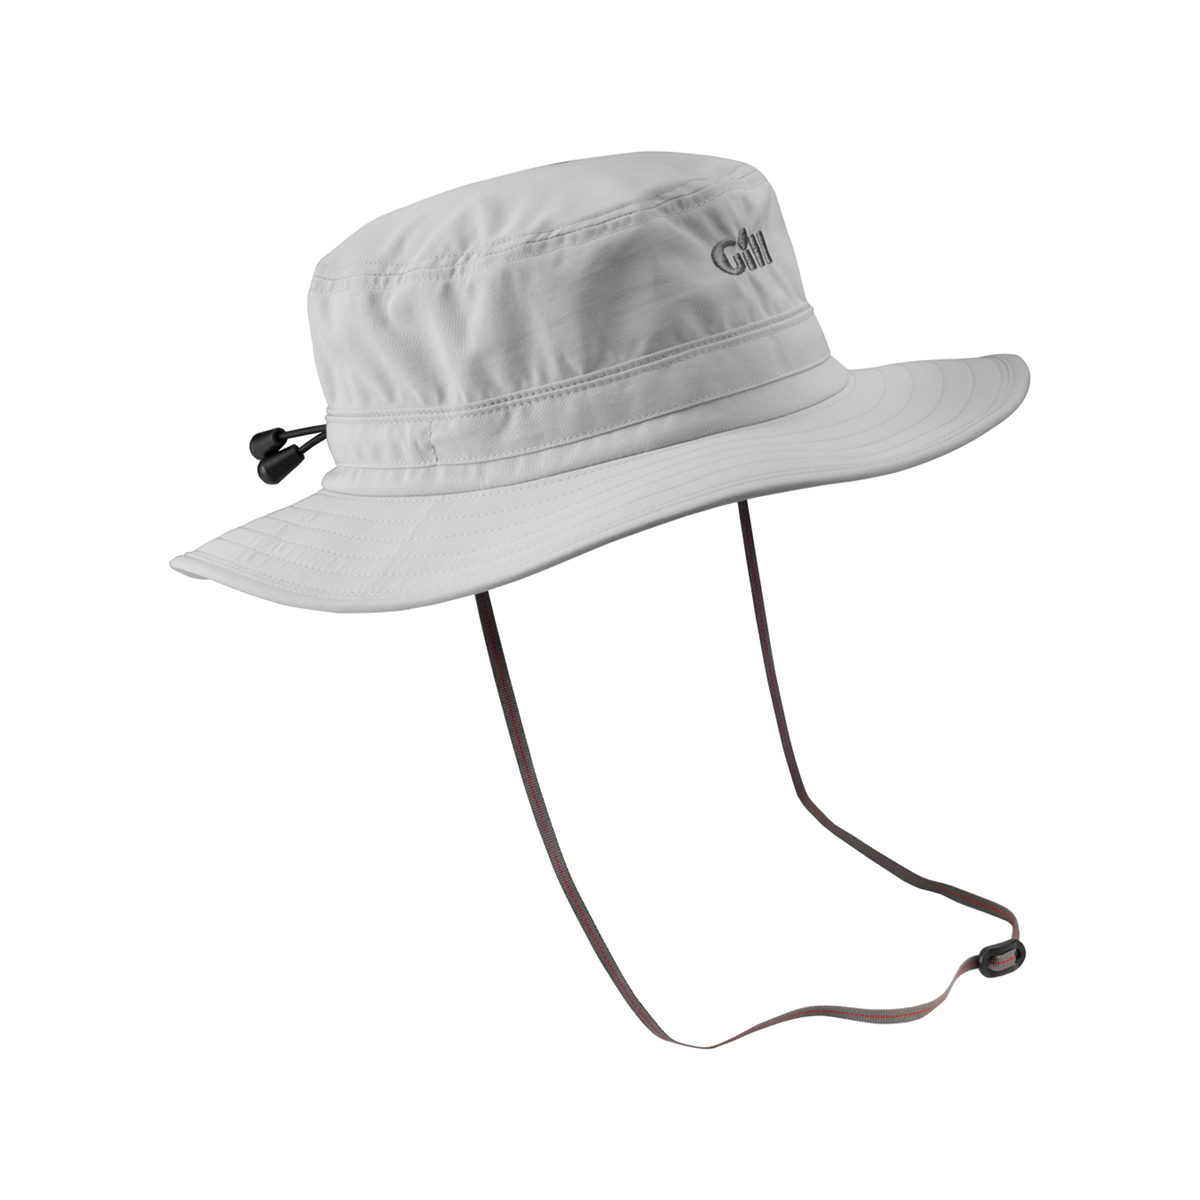 Gill Sailing chapeau à large bord - gris clair, taille L